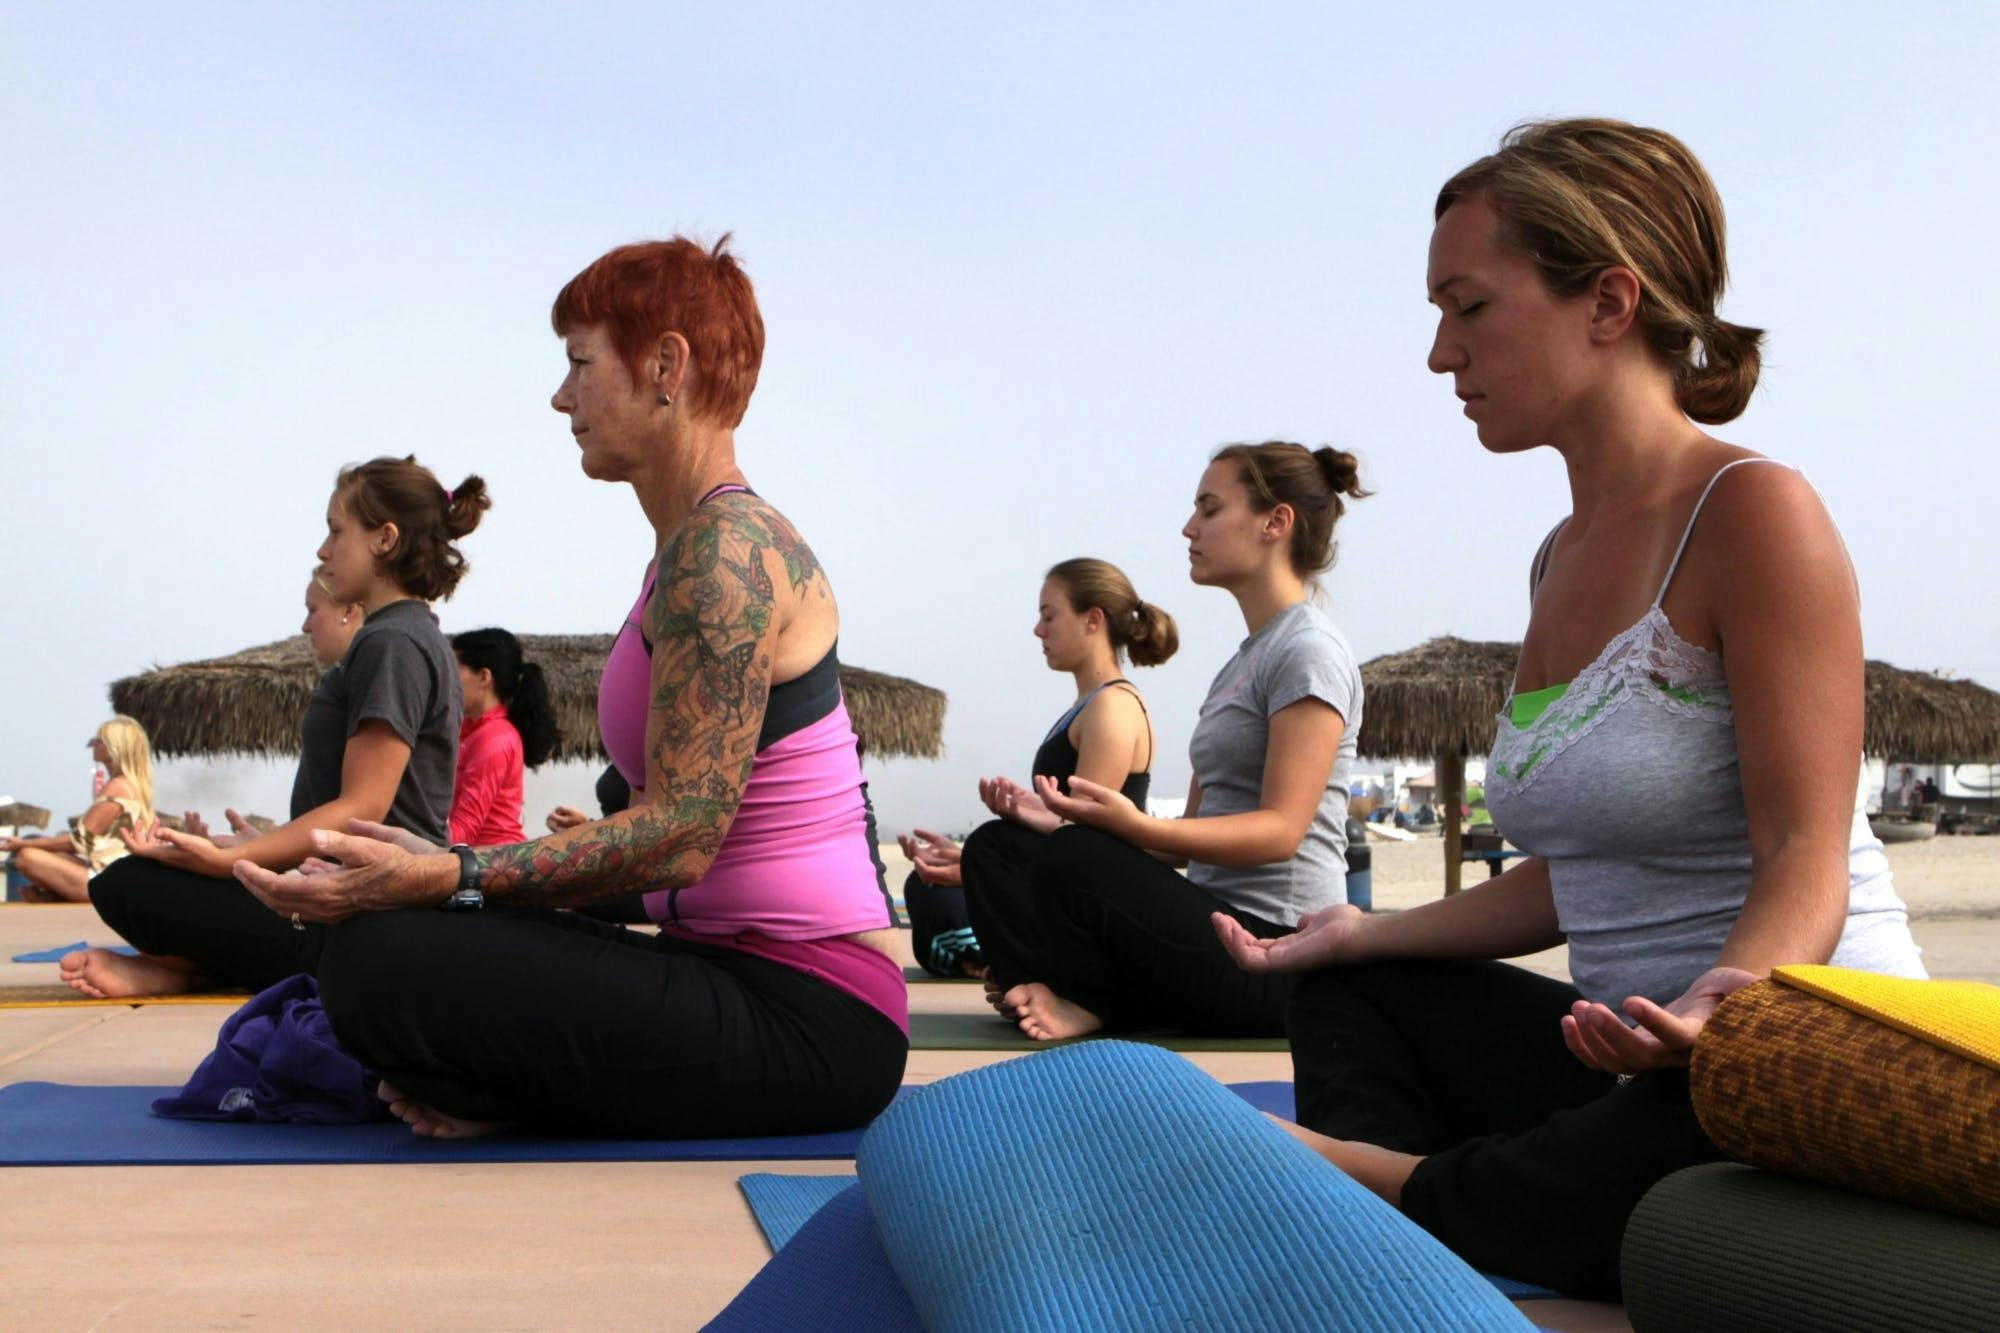 Lezione di yoga in piccoli gruppi in riva al mare a Ortigia